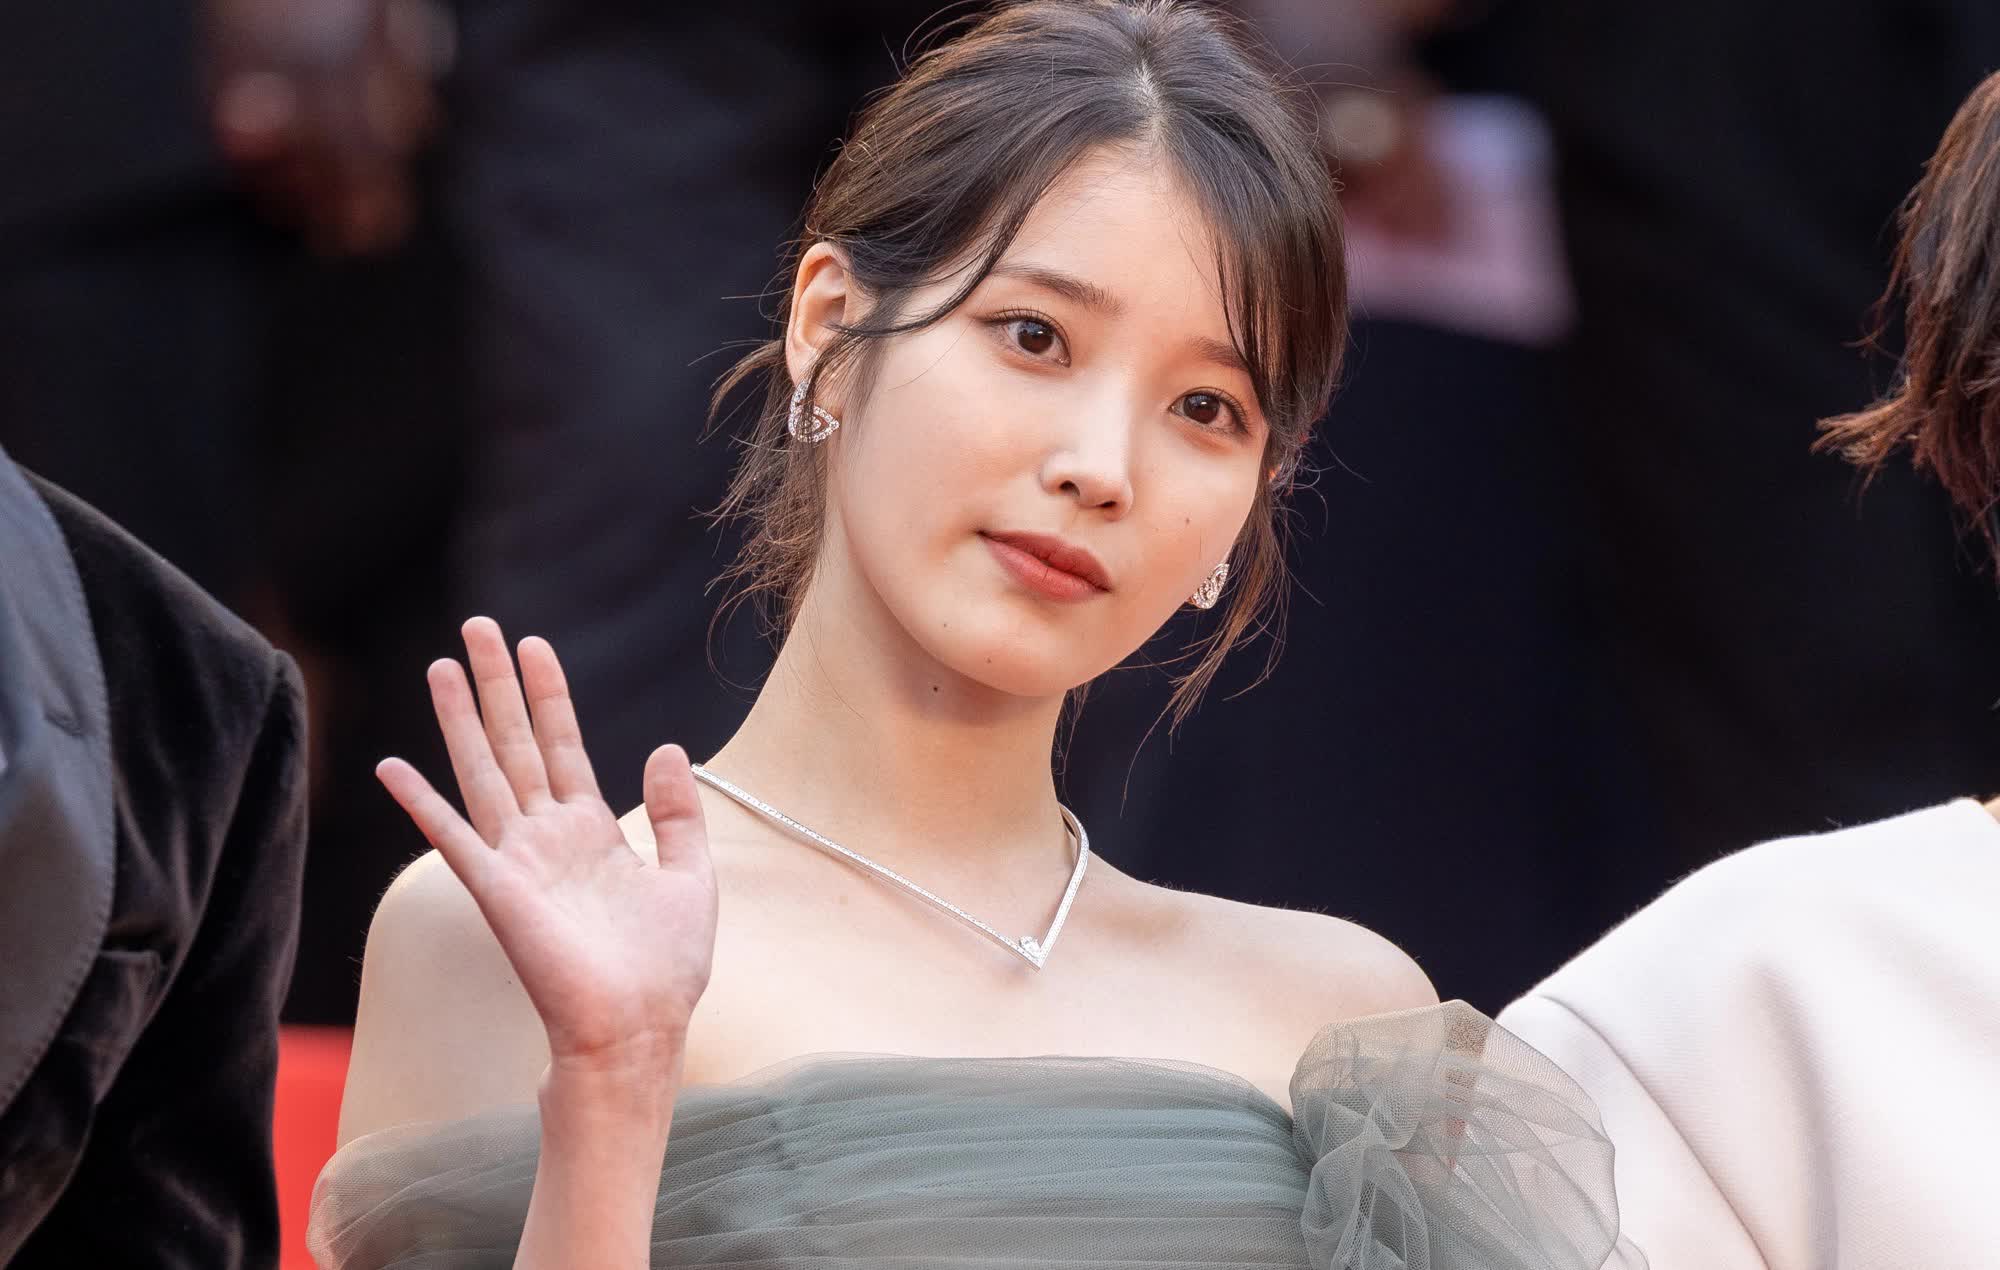 Tranh cãi việc mỹ nhân vượt qua Song Hye Kyo để nhận cát-xê cao nhất phim Hàn: Diễn xuất bất ổn, năng lực không xứng tầm? - Ảnh 1.